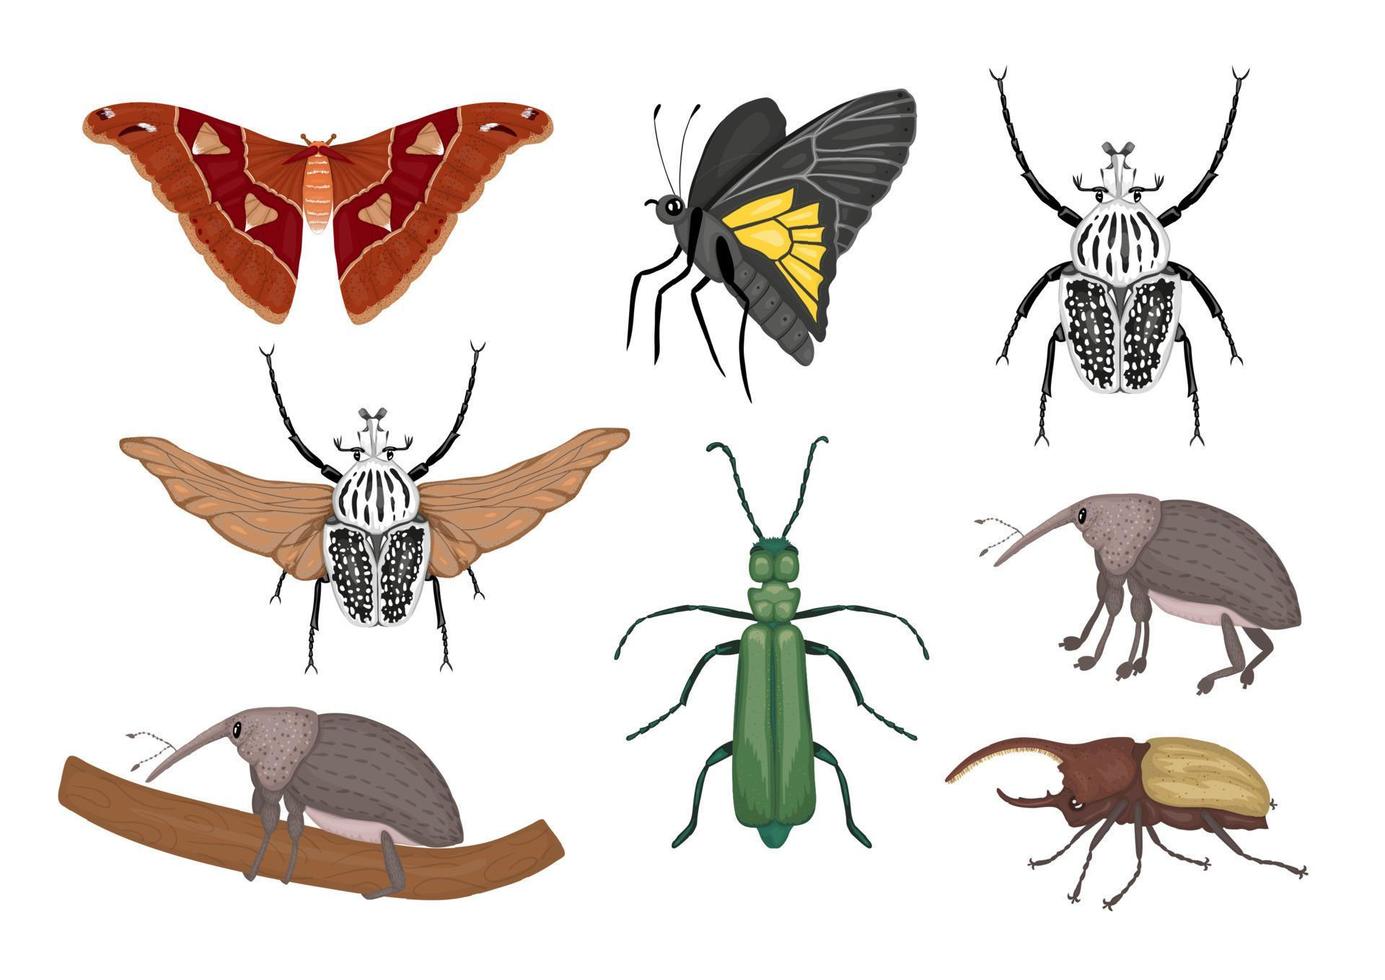 Vektorsatz tropischer Insekten. handgezeichnete farbige Atlasmotte, Rüsselkäfer, Schmetterling, Goliath, Herkuleskäfer, spanische Fliege. bunte süße Sammlung tropischer Käfer. vektor